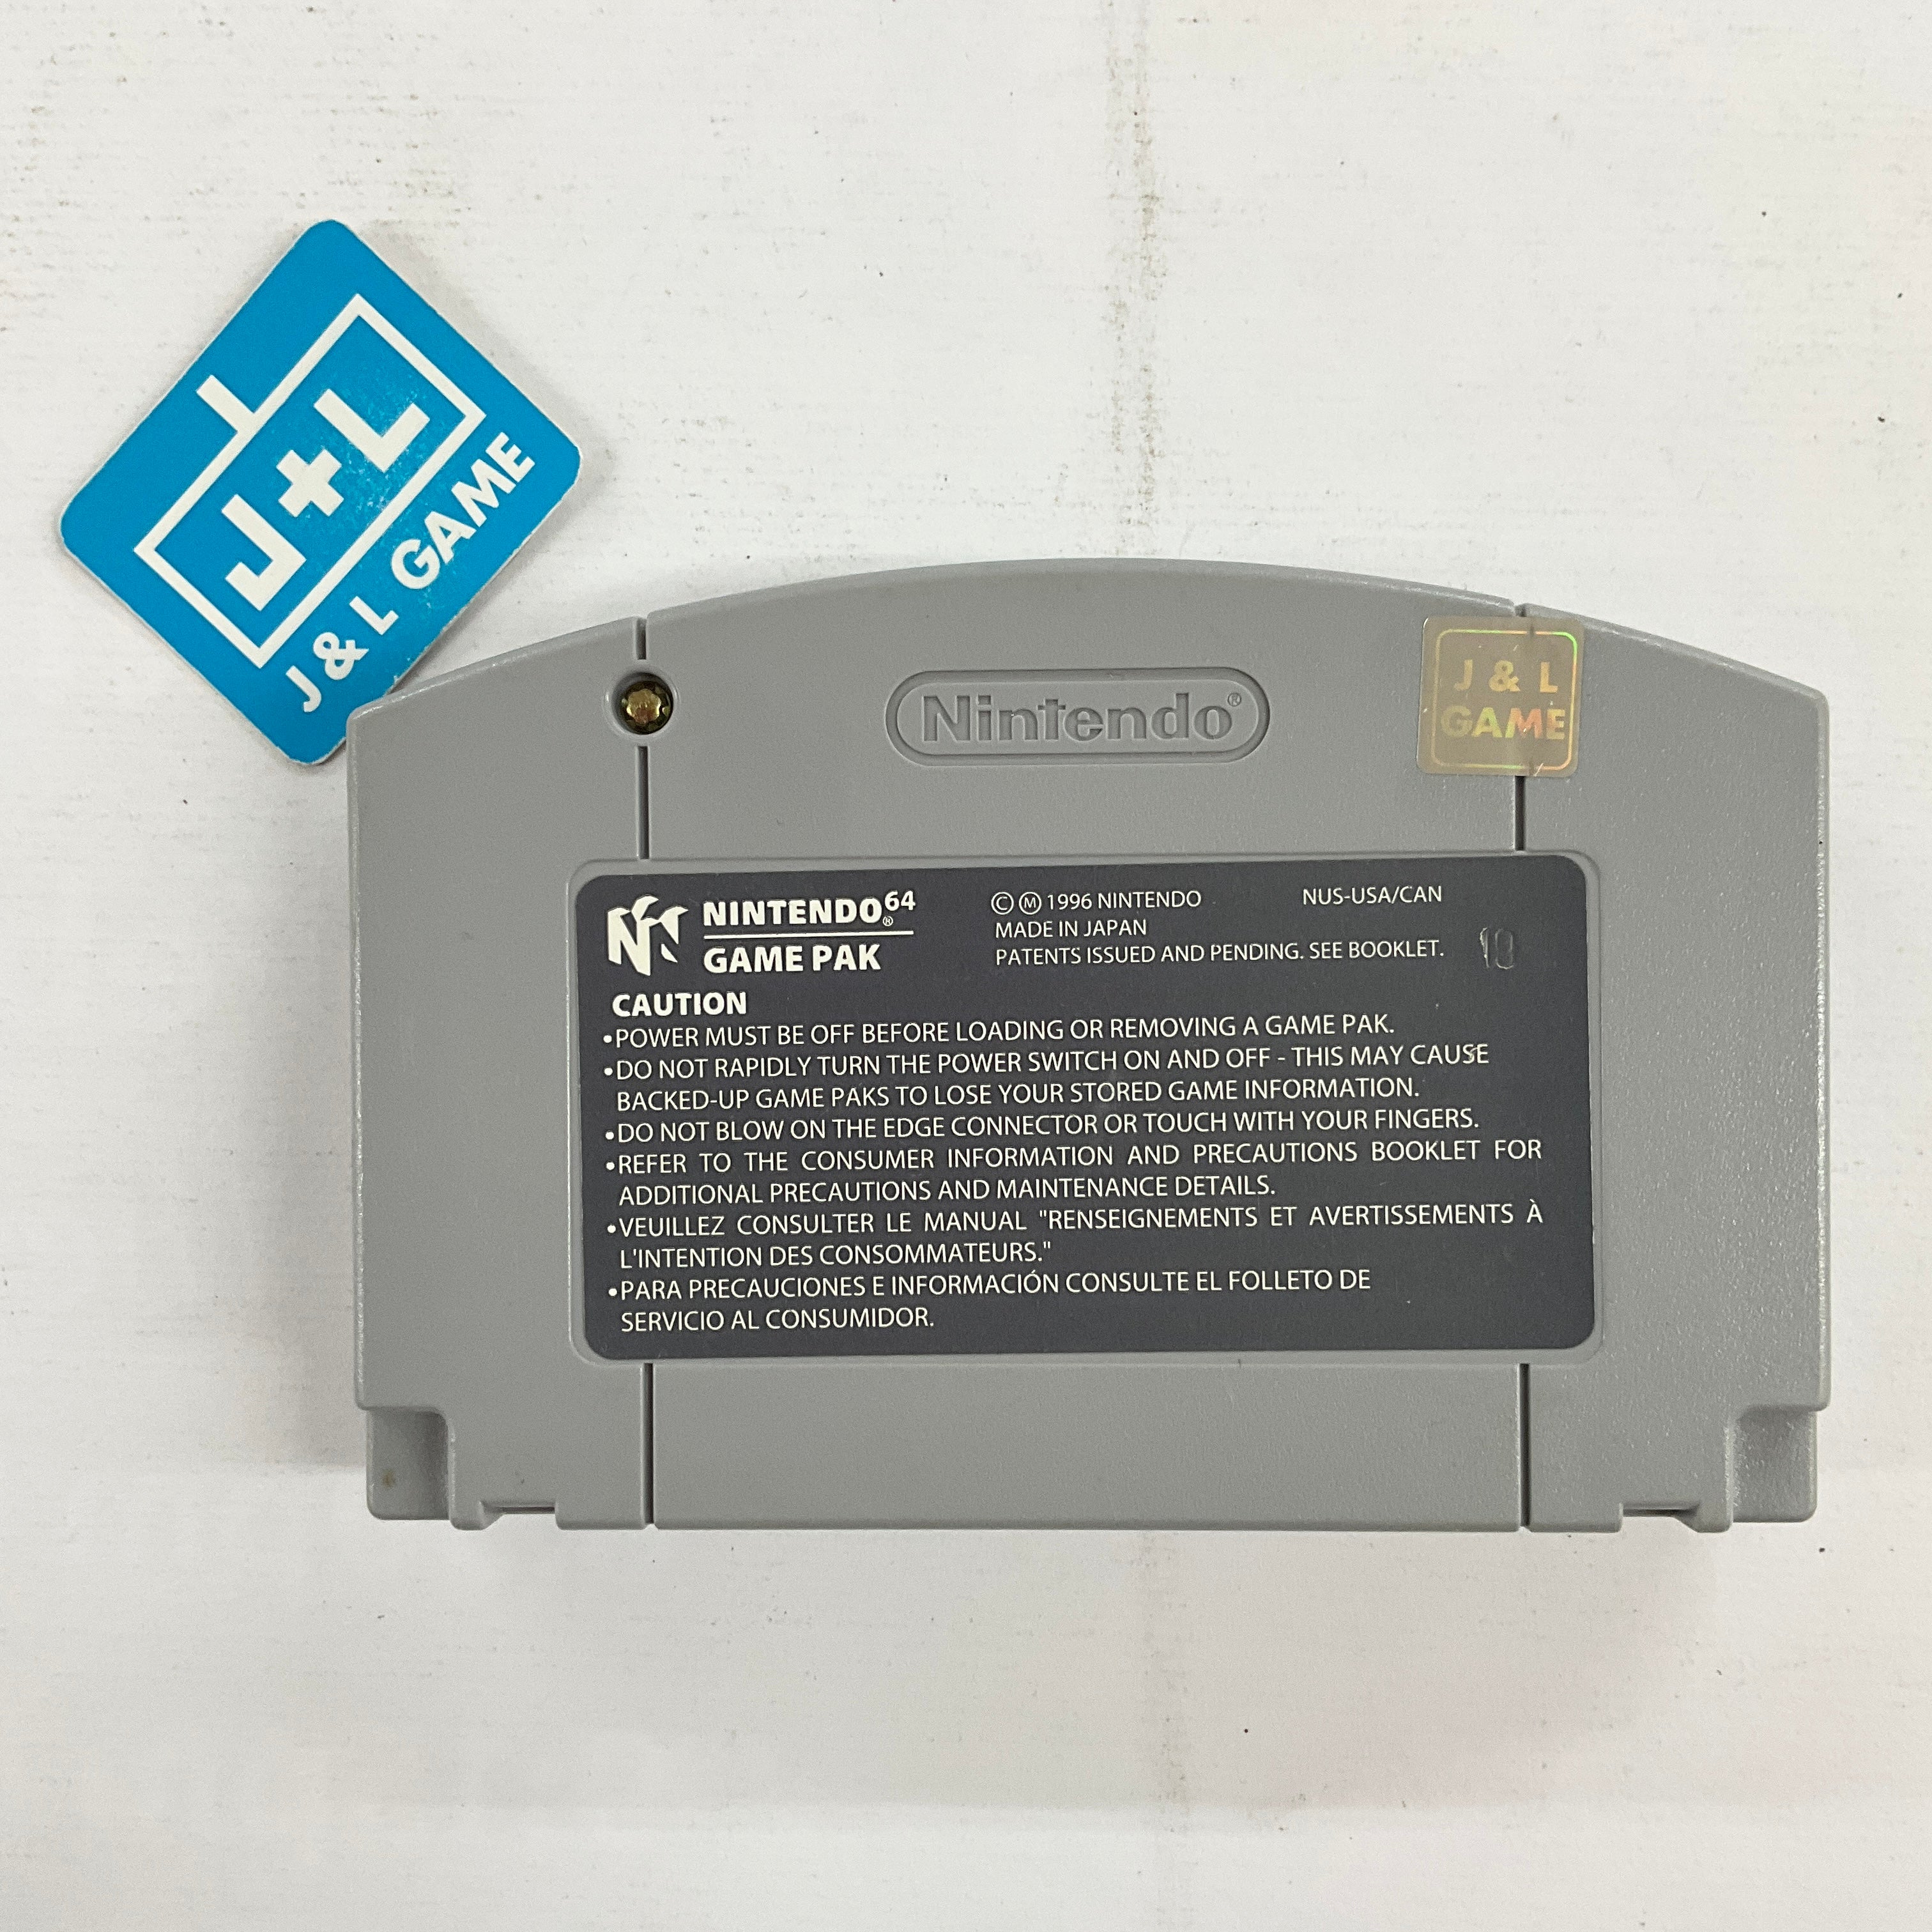 Hexen - (N64) Nintendo 64 [Pre-Owned] Video Games GT Interactive   